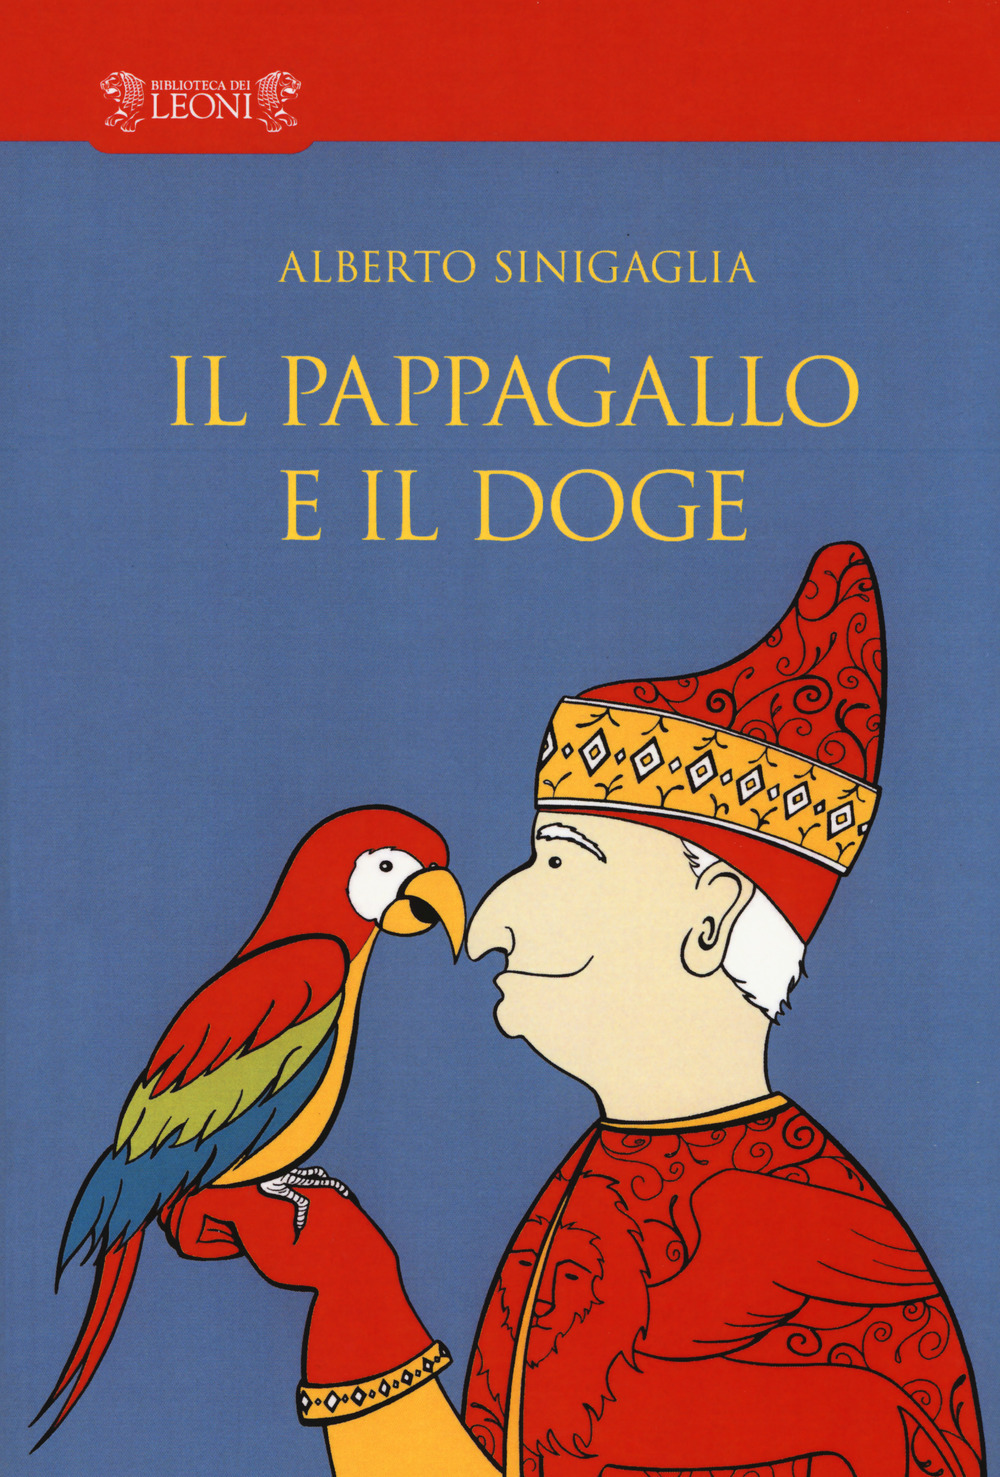 Alberto Sinigaglia presenta “Il Pappagallo e il Doge” [VIDEO]